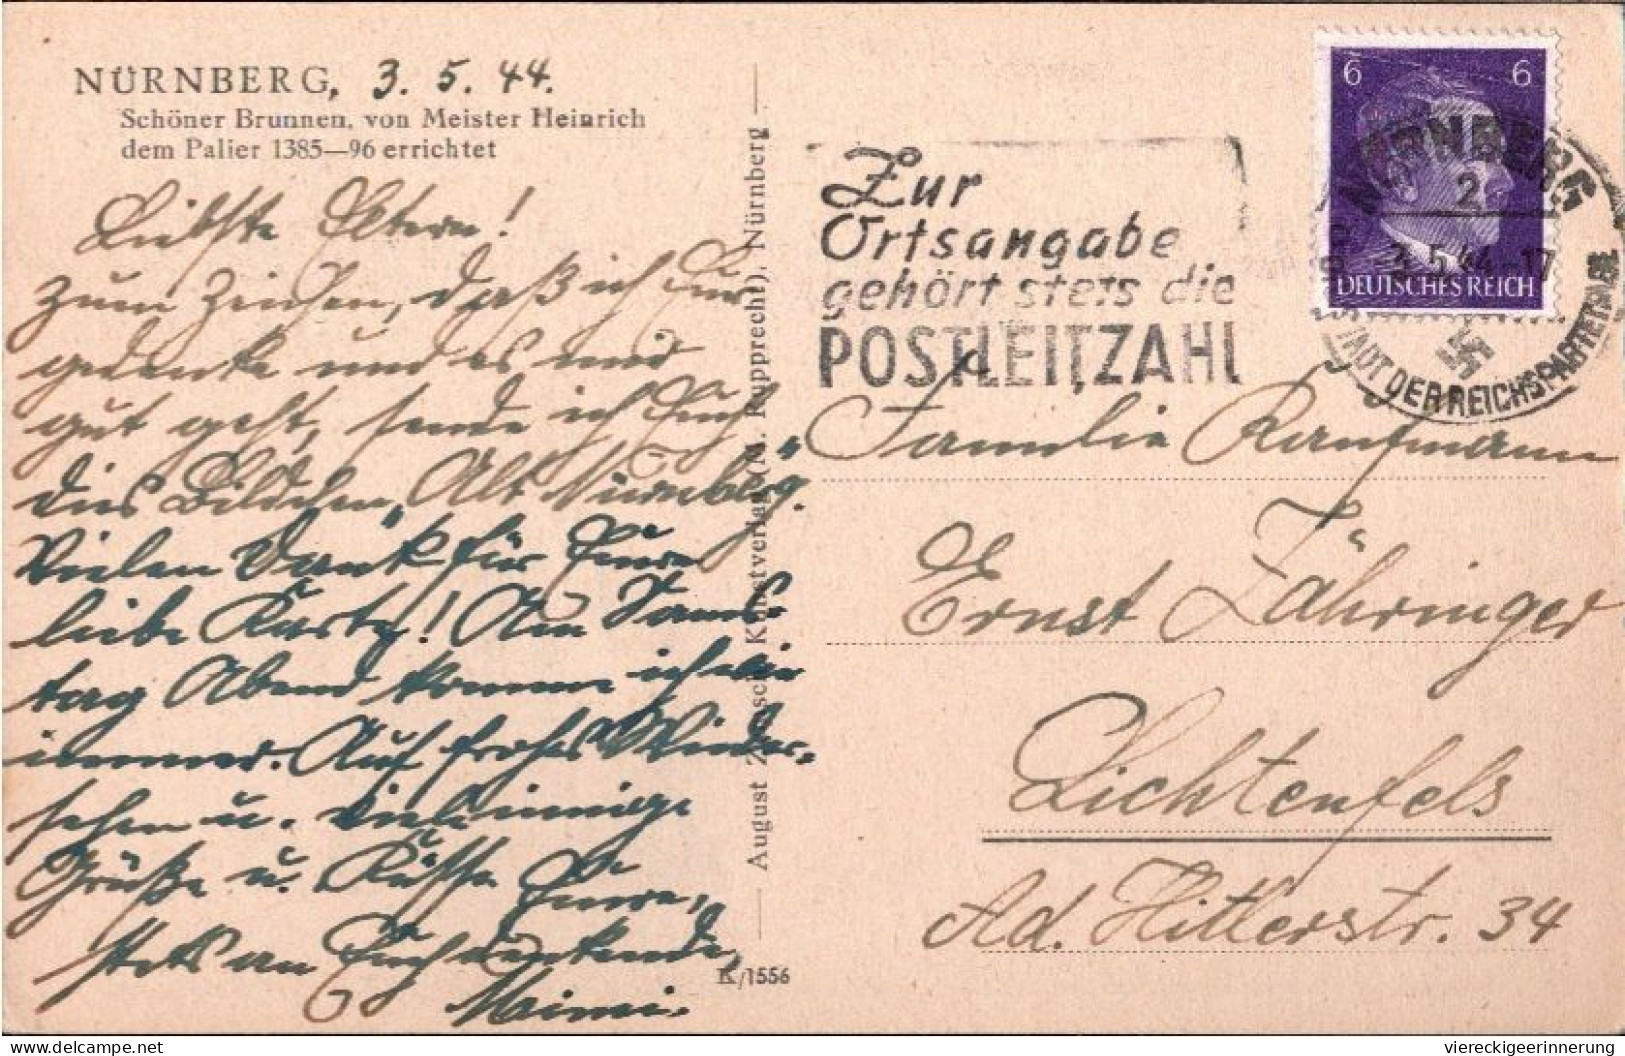 ! Karte Aus Nürnberg, Maschinenwerbestempel 1944, Posteigenwerbung, Zur Ortsangabe Gehört Stets Die  Postleitzahl - Cartas & Documentos